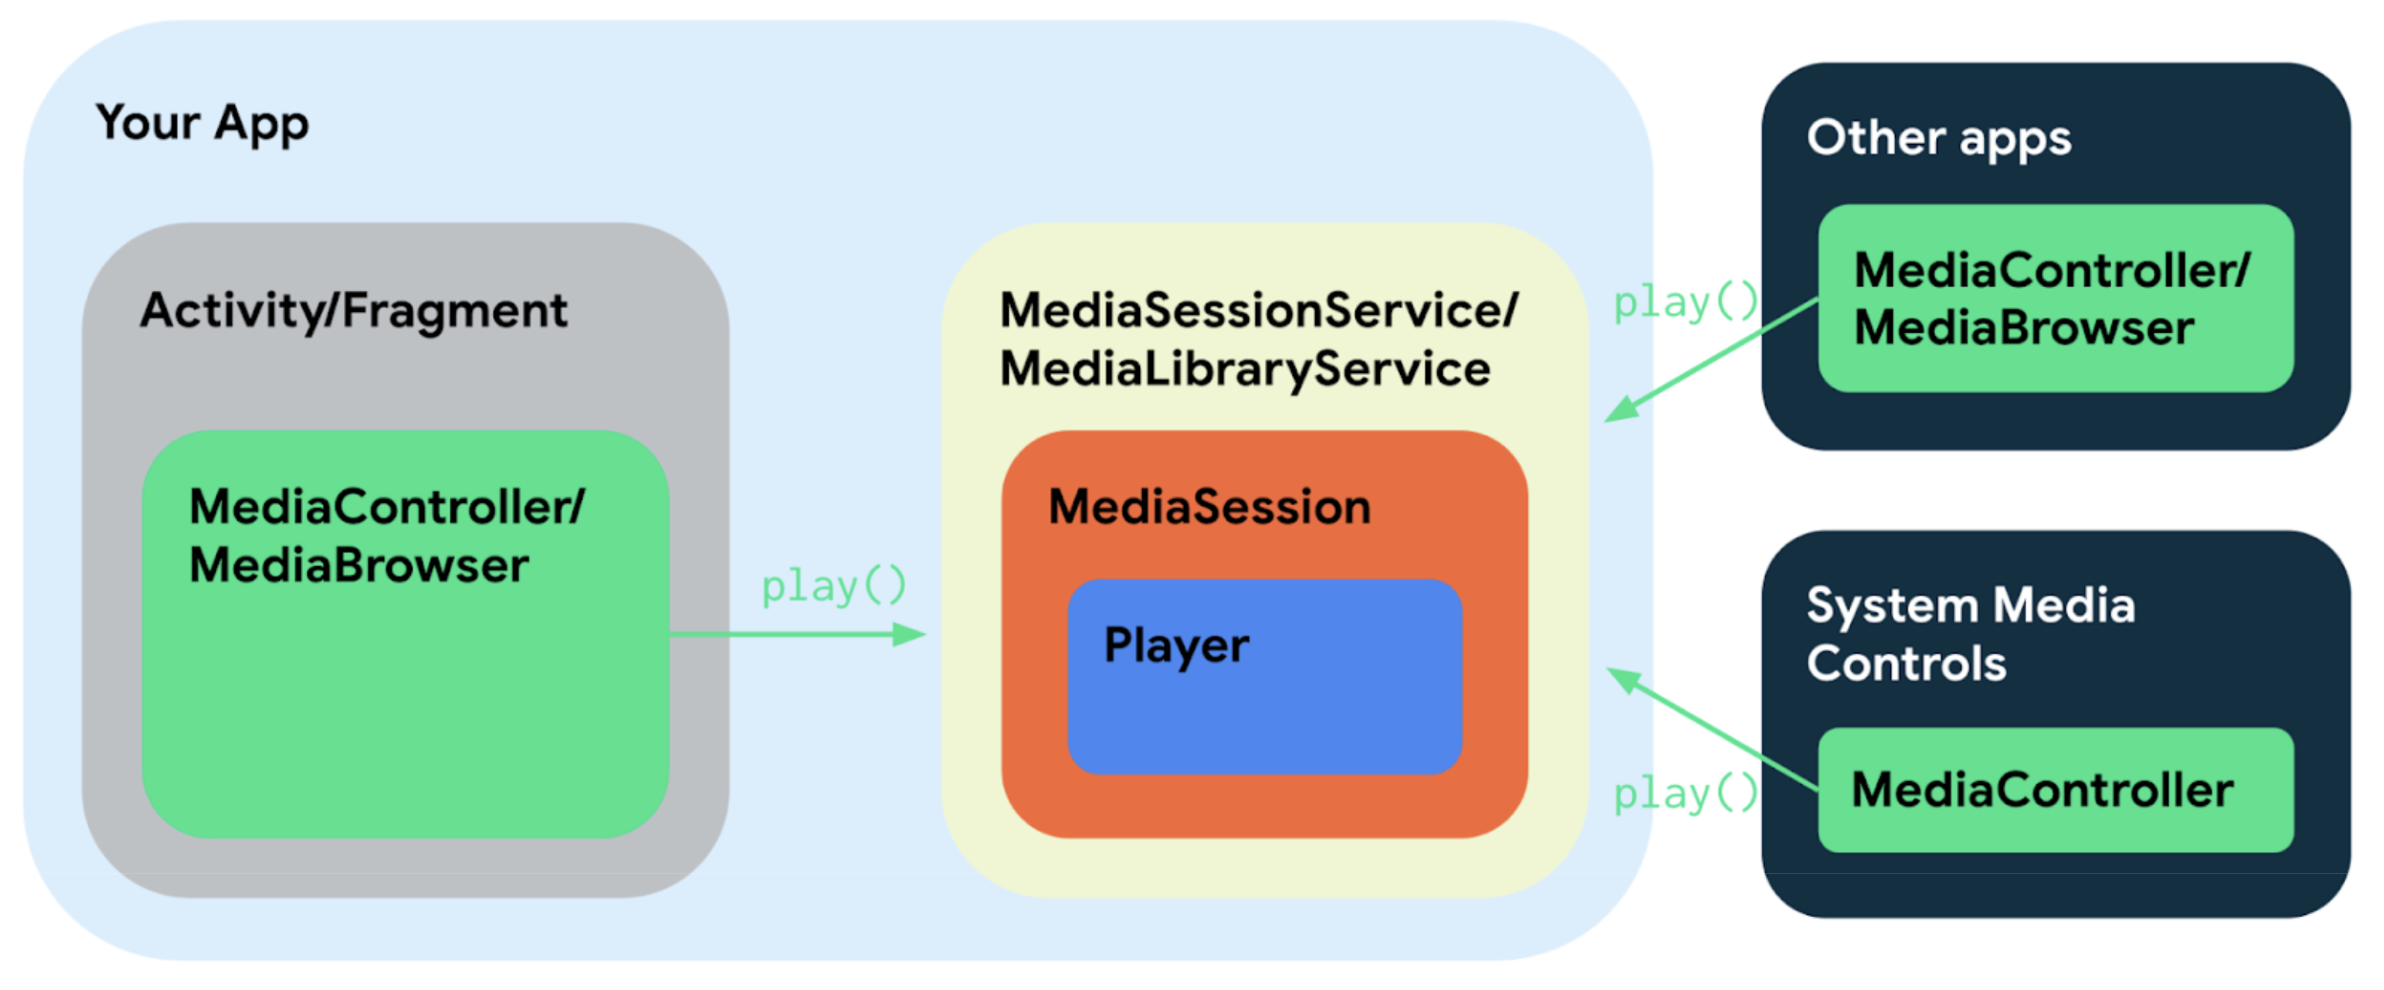 Los diferentes componentes de una app de música que usa Media3 se conectan entre sí de varias maneras simples debido a que comparten interfaces y clases.